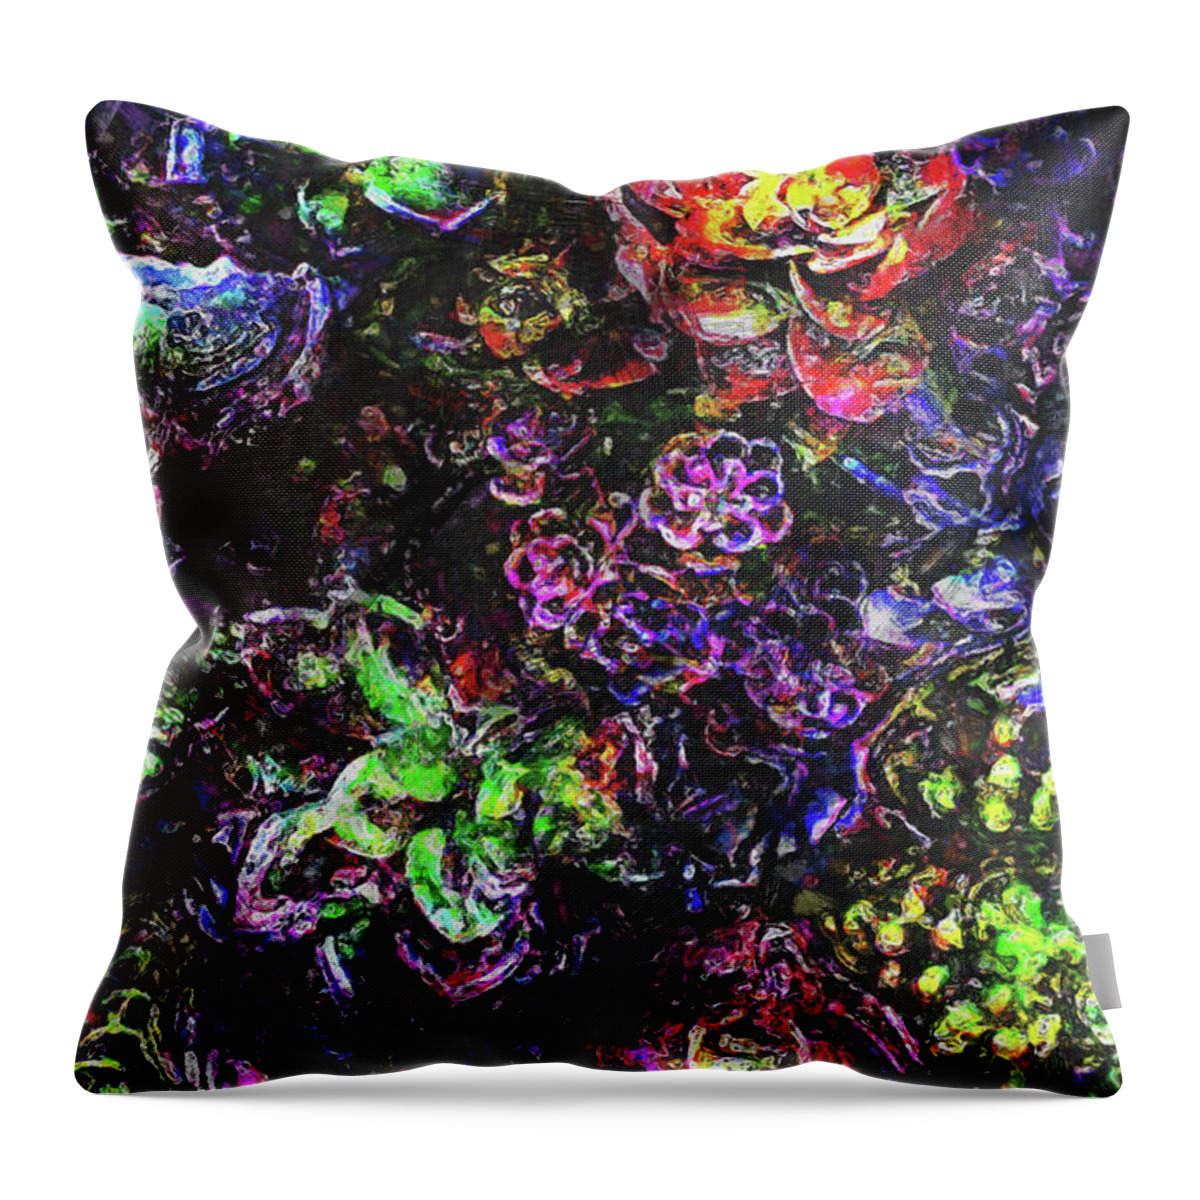 Garden Throw Pillow featuring the digital art Textural Garden Plants by Phil Perkins